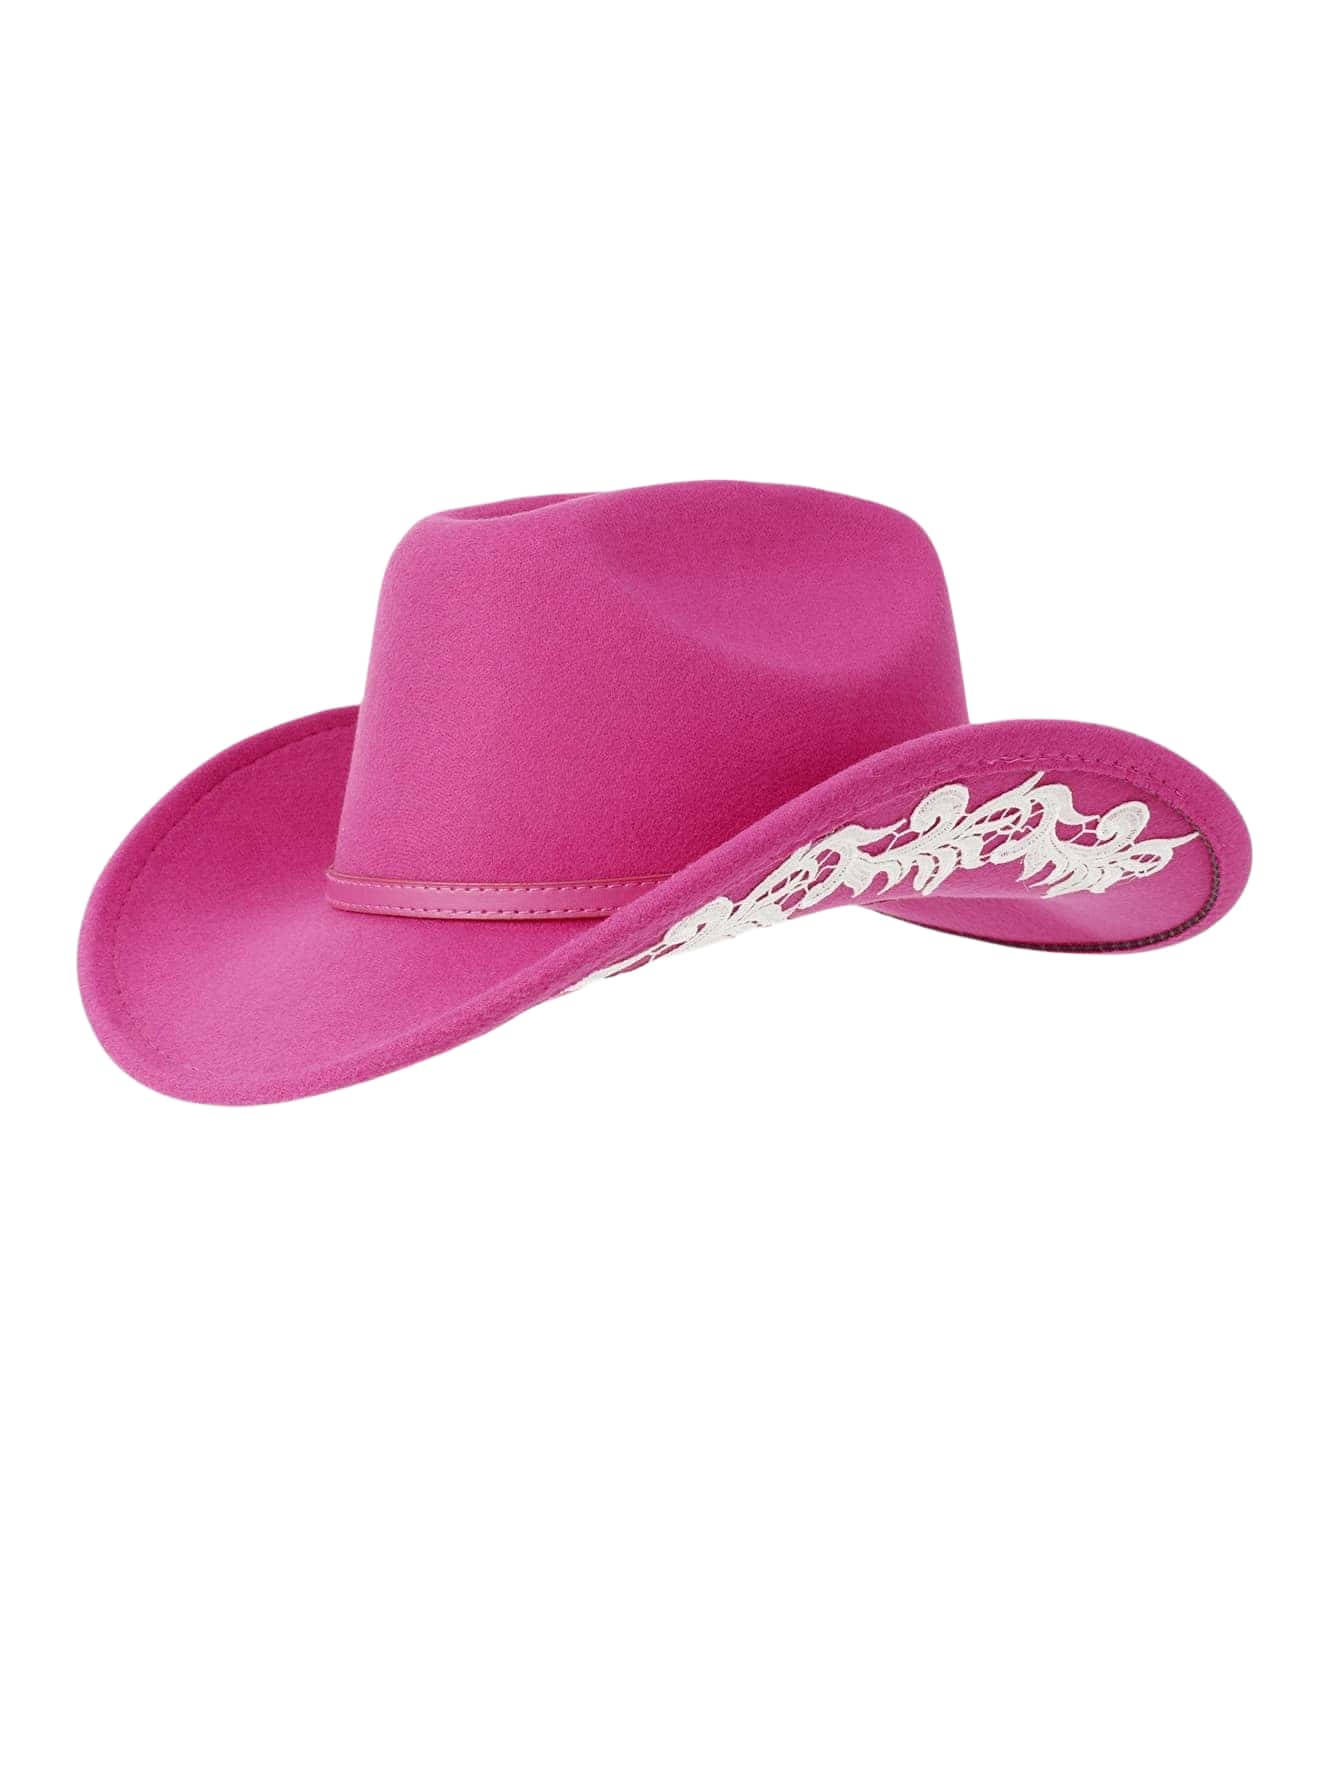 Яркая ковбойская шляпа в стиле допамина, ярко-розовый ковбойская шляпа с перьями шляпа невесты ковбойская шляпа для девичника искусственная шляпа для невесты ковбойская шляпа для дискотеки